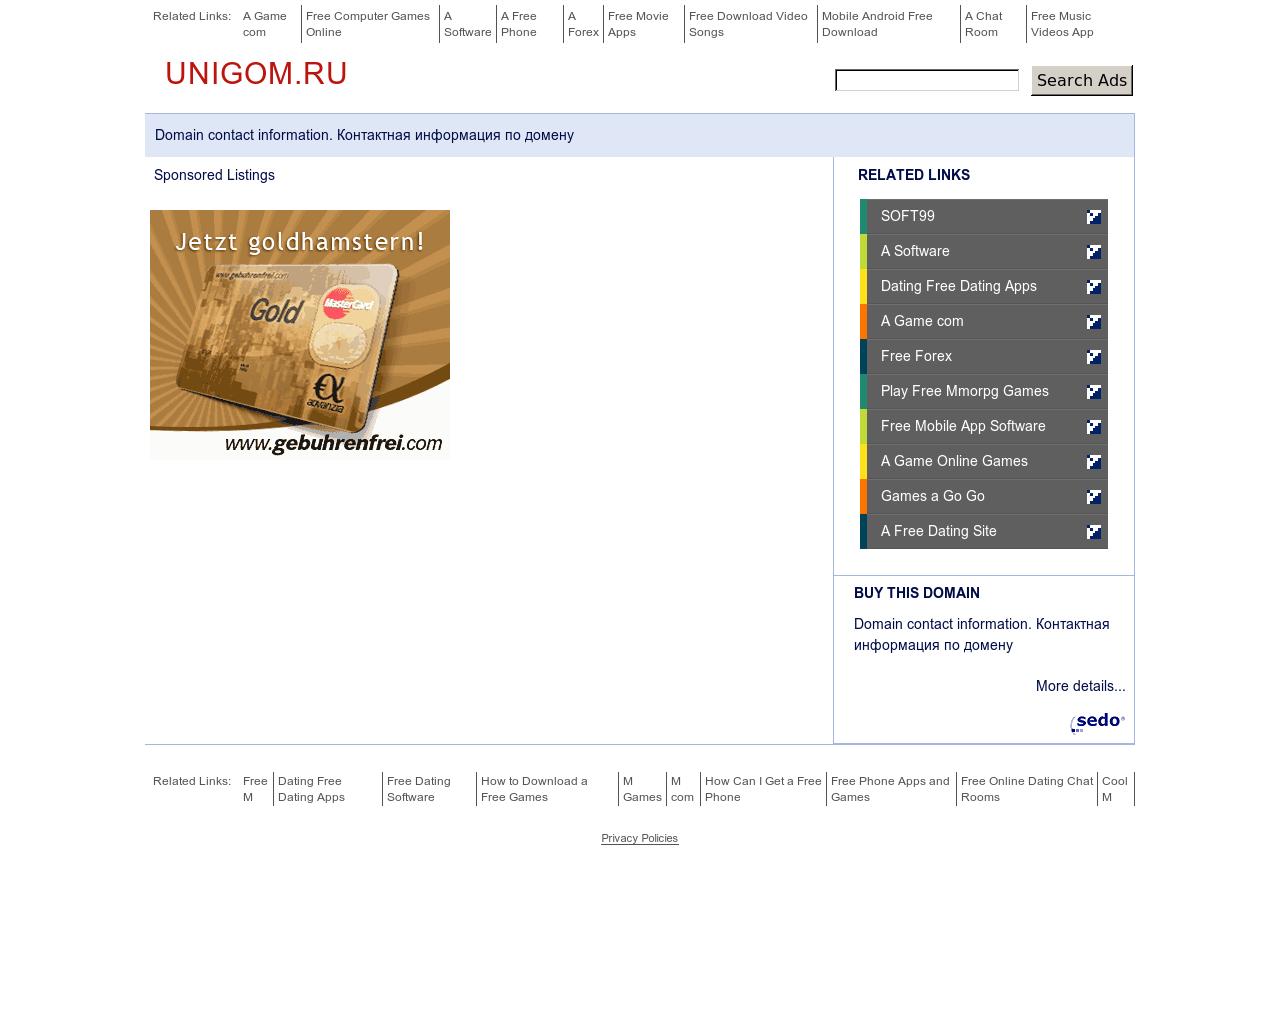 Изображение сайта unigom.ru в разрешении 1280x1024